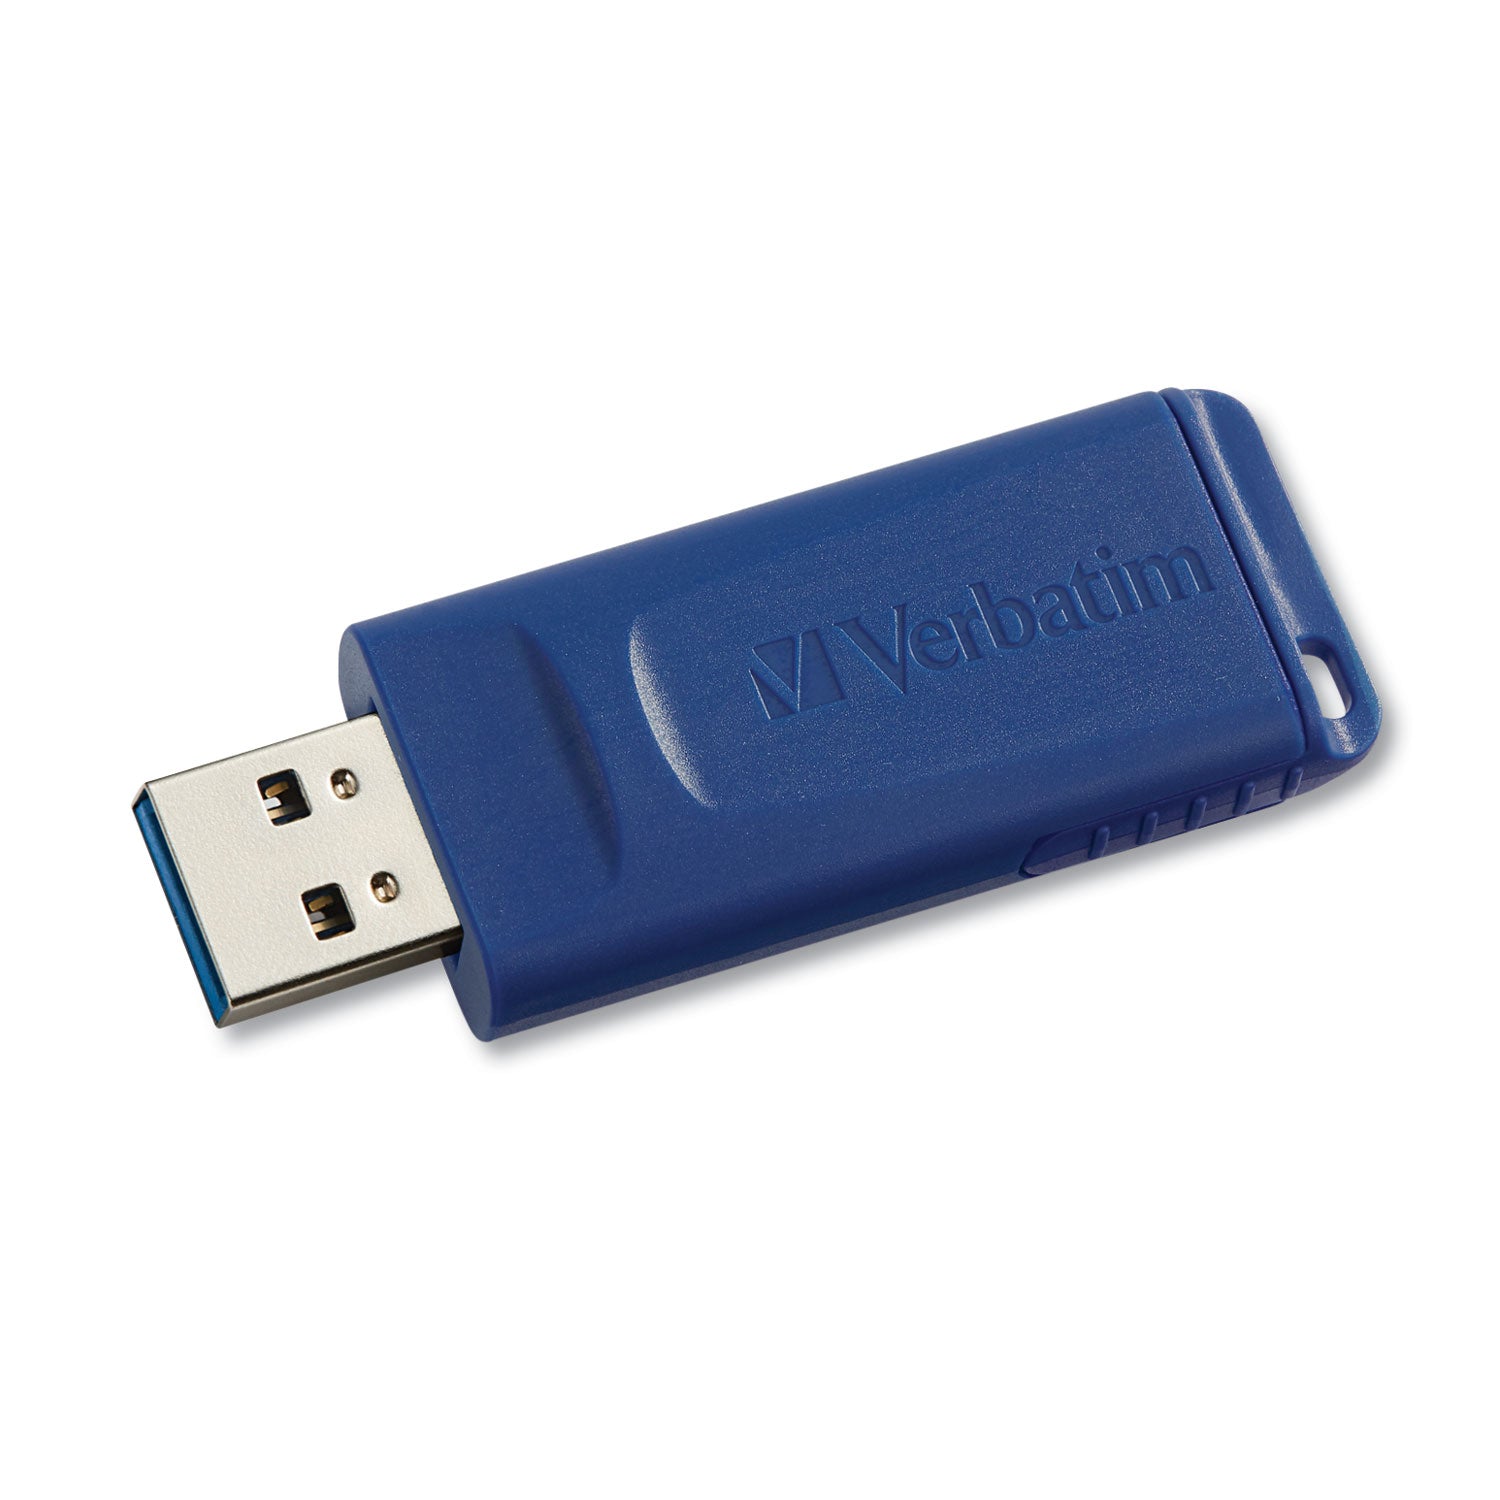 Classic USB 2.0 Flash Drive, 4 GB, Blue - 